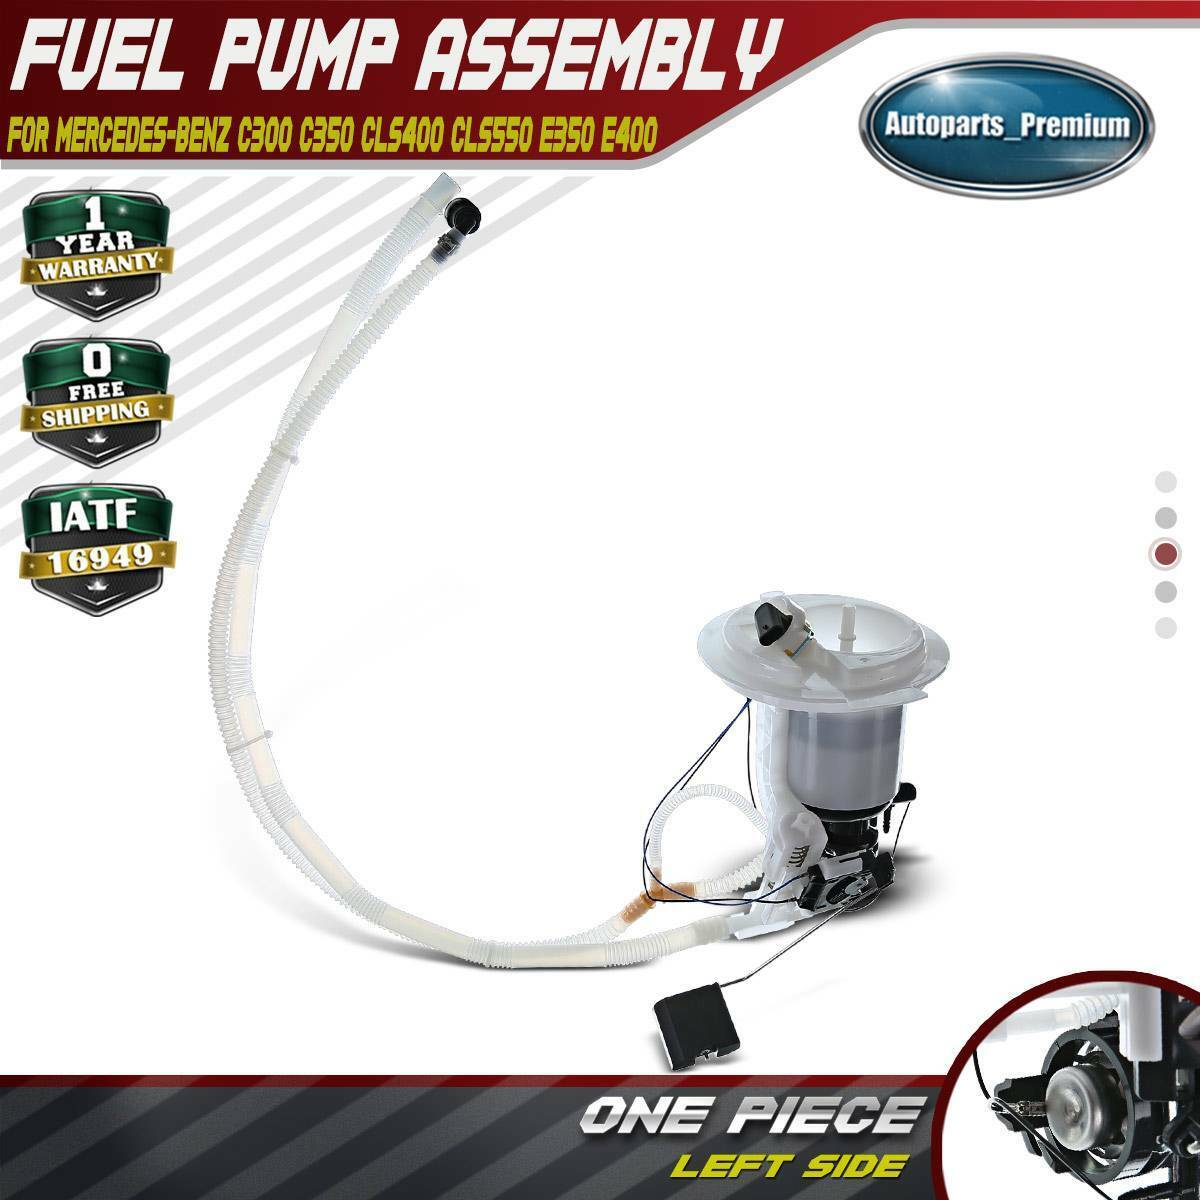 Fuel Pump Assembly for Mercedes-Benz W212 E350 E400 E550 CLS400 GLK 2184700994